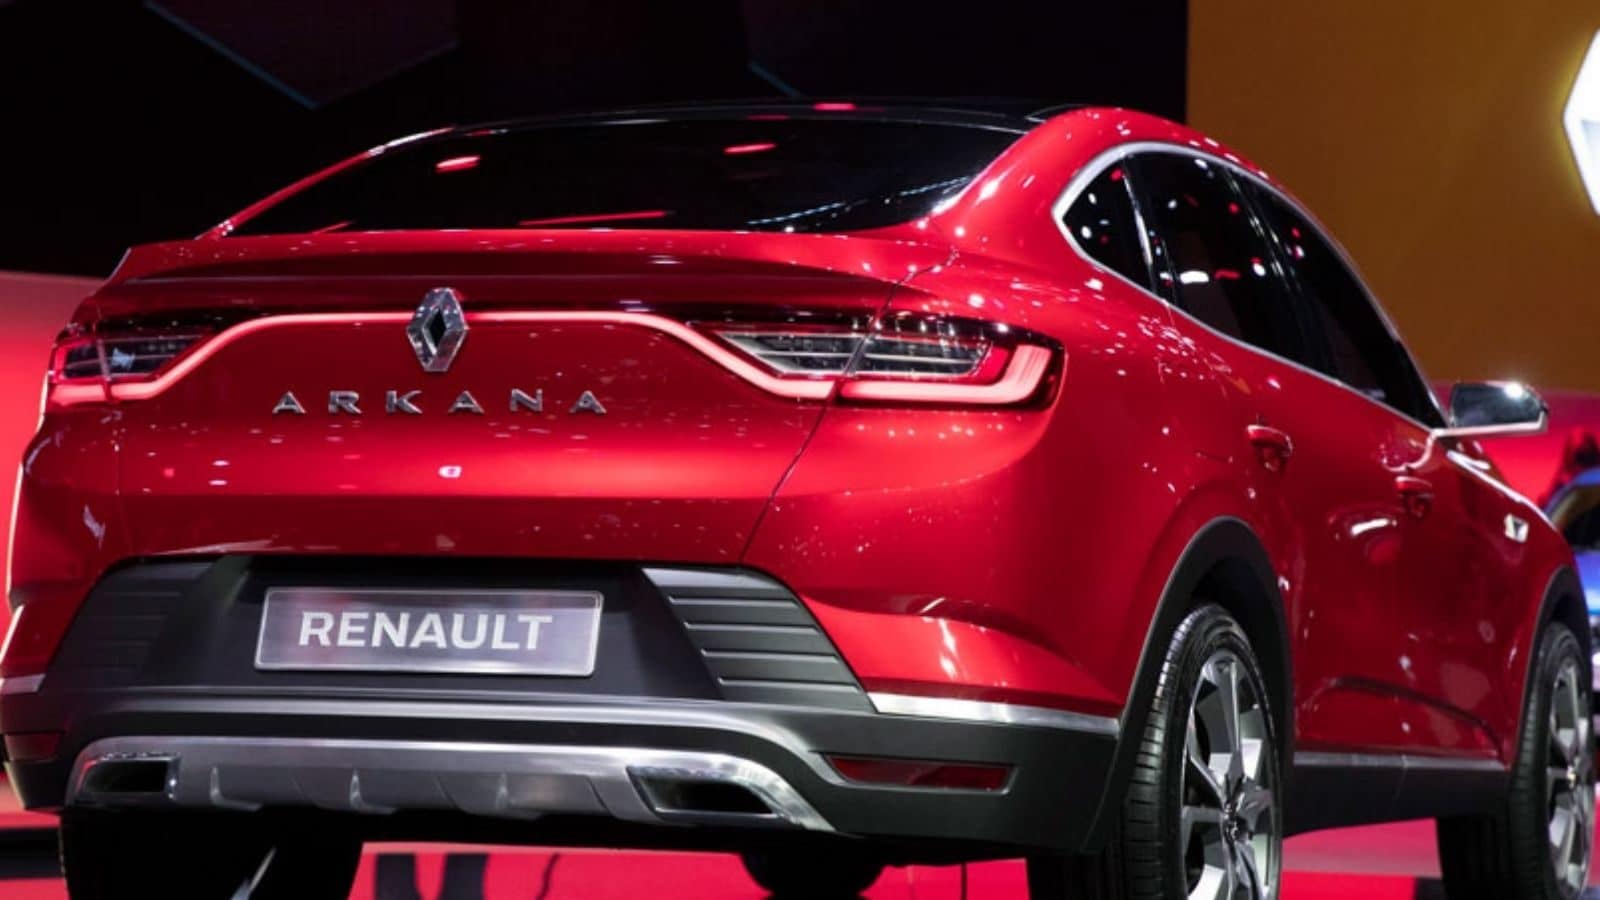 Renault suv arkana features and price- Renault ने शुरू की अर्काना की  टेस्टिंग, Tata Nexon को देगी टक्‍कर, जानिए कीमत और फीचर – News18 हिंदी